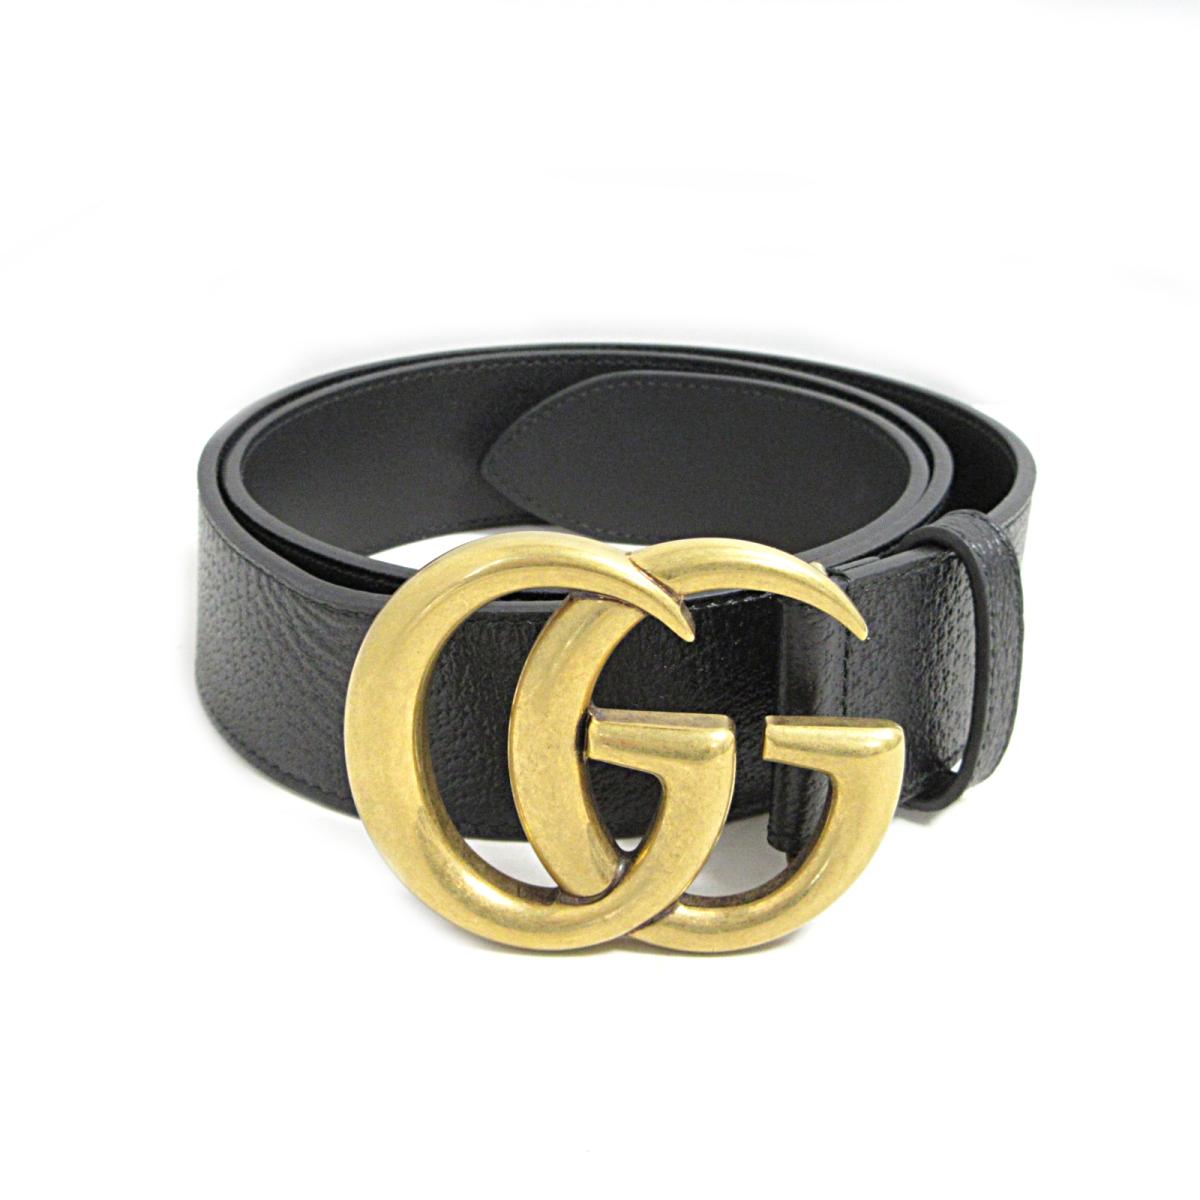 black gucci belt for sale